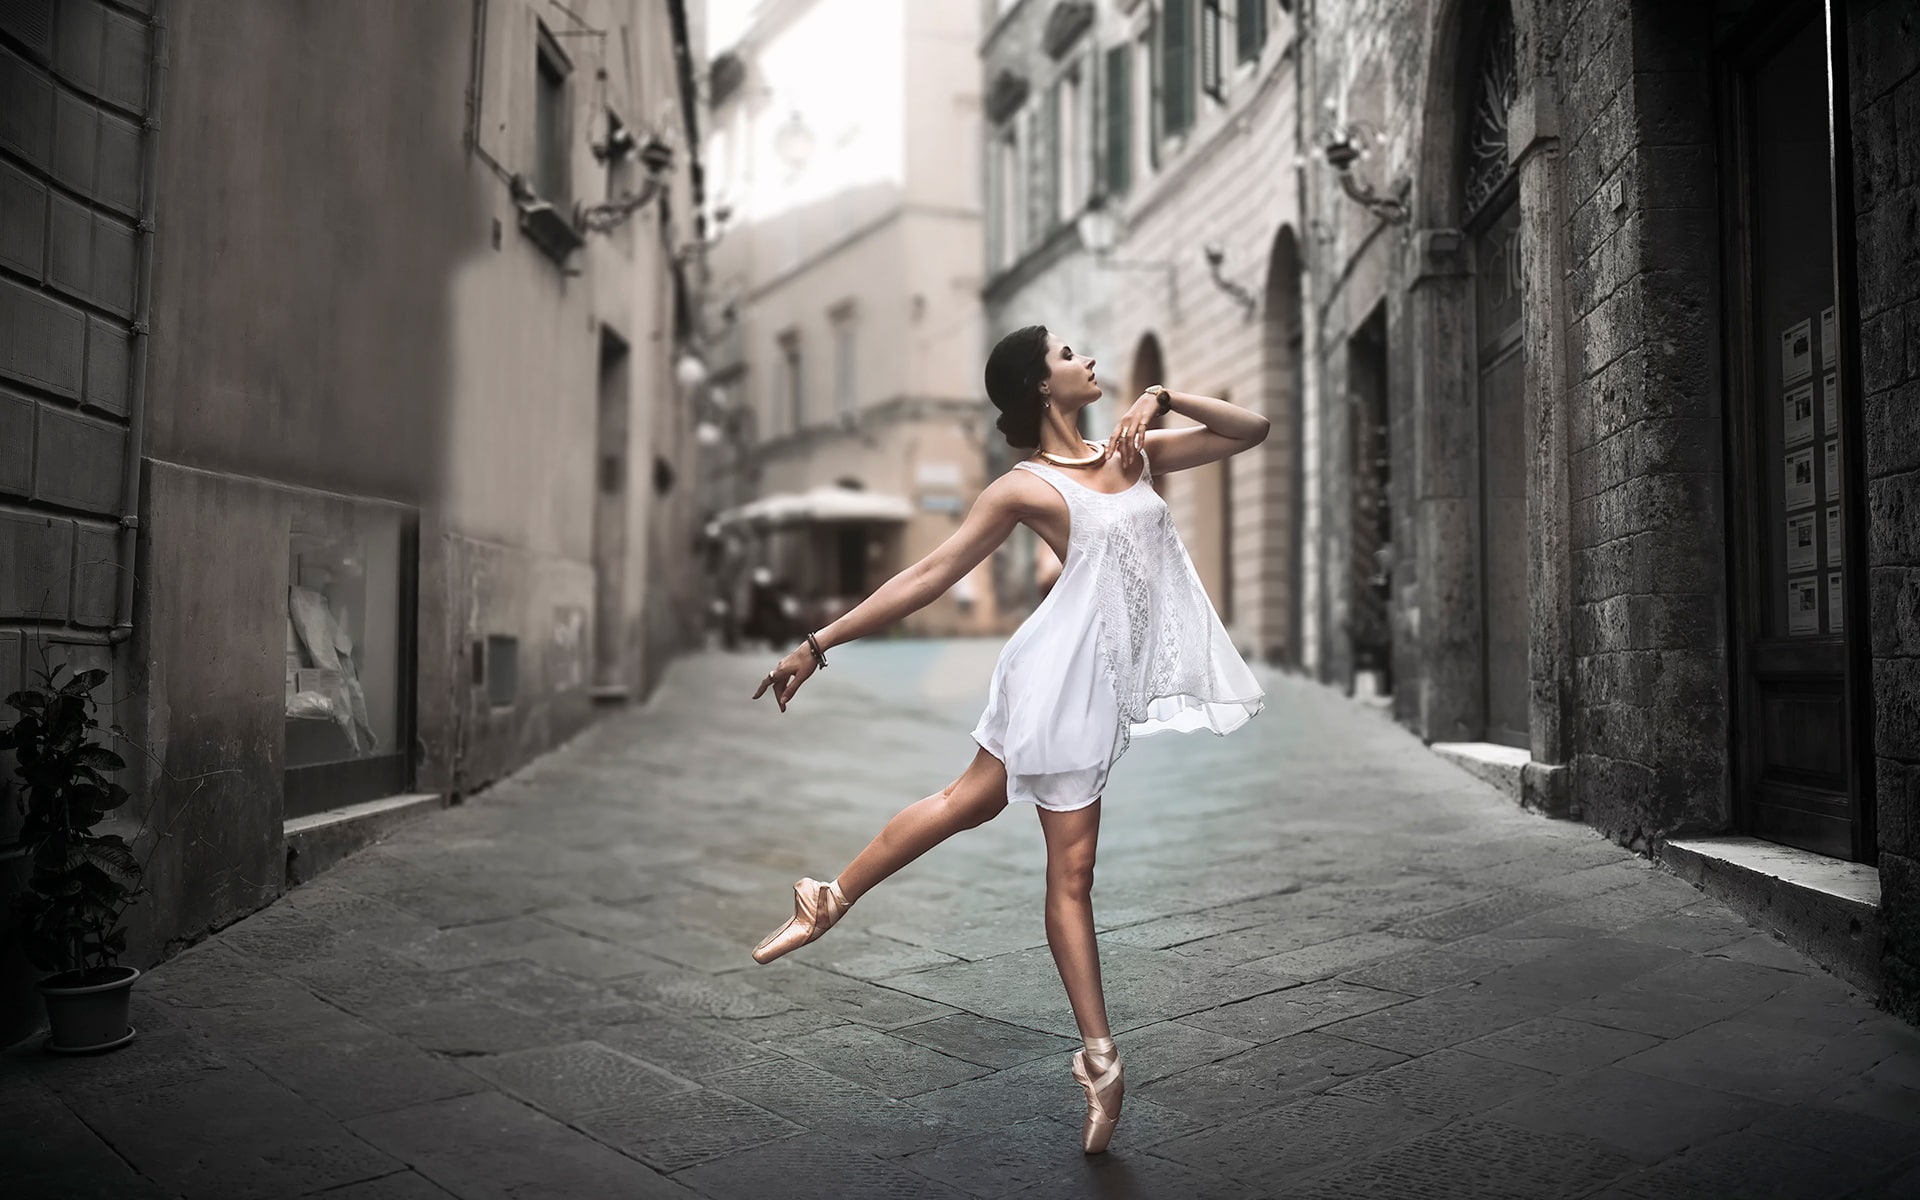 White dress girl dance in the street, ballerina's white tank dress